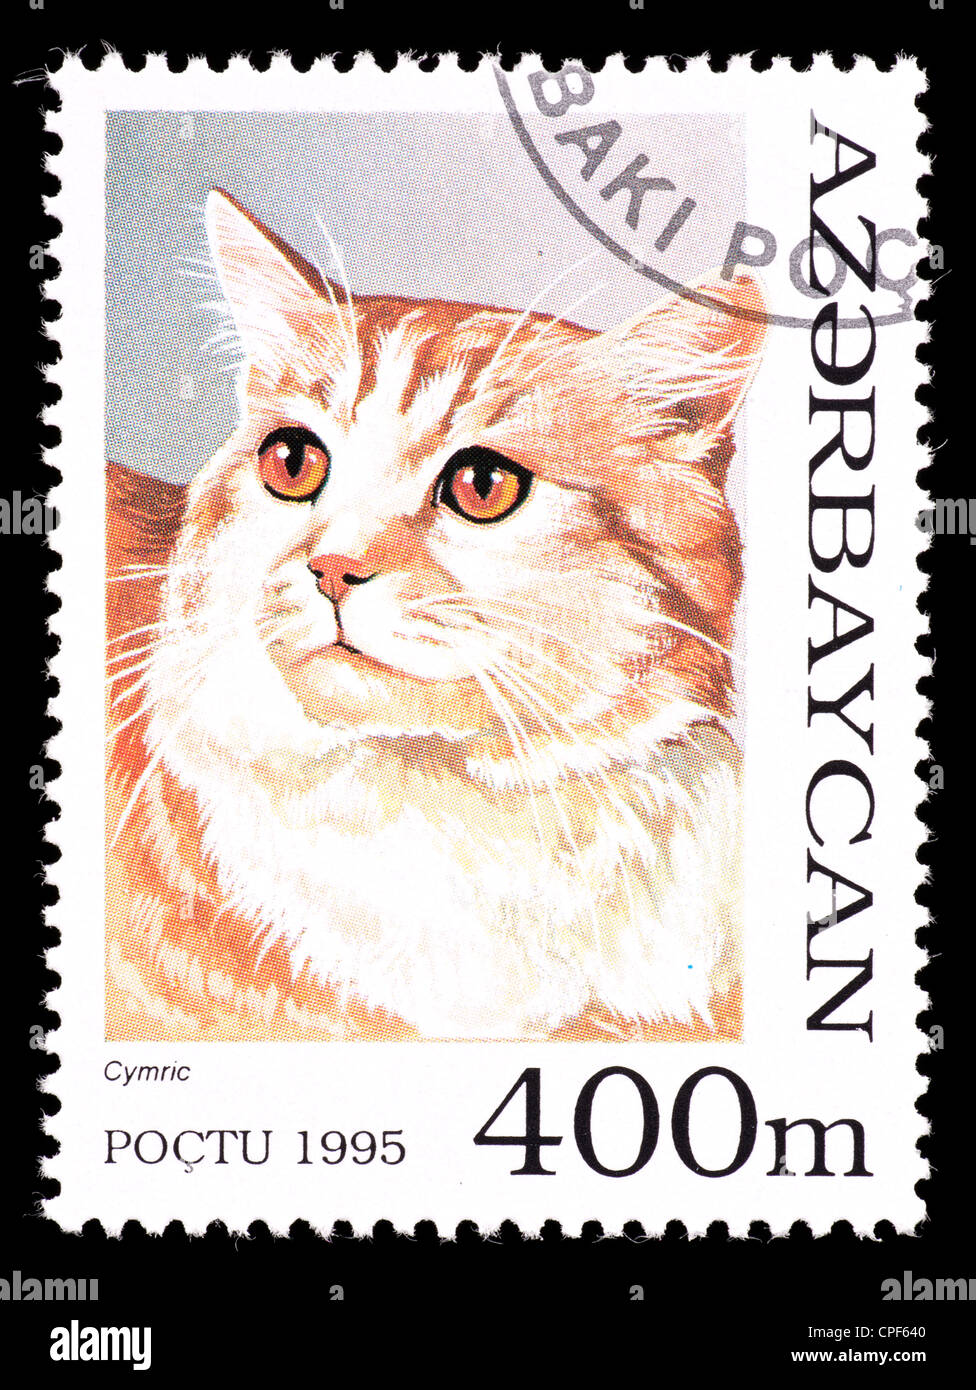 Timbre-poste de l'Azerbaïdjan représentant un chat cymric. Banque D'Images